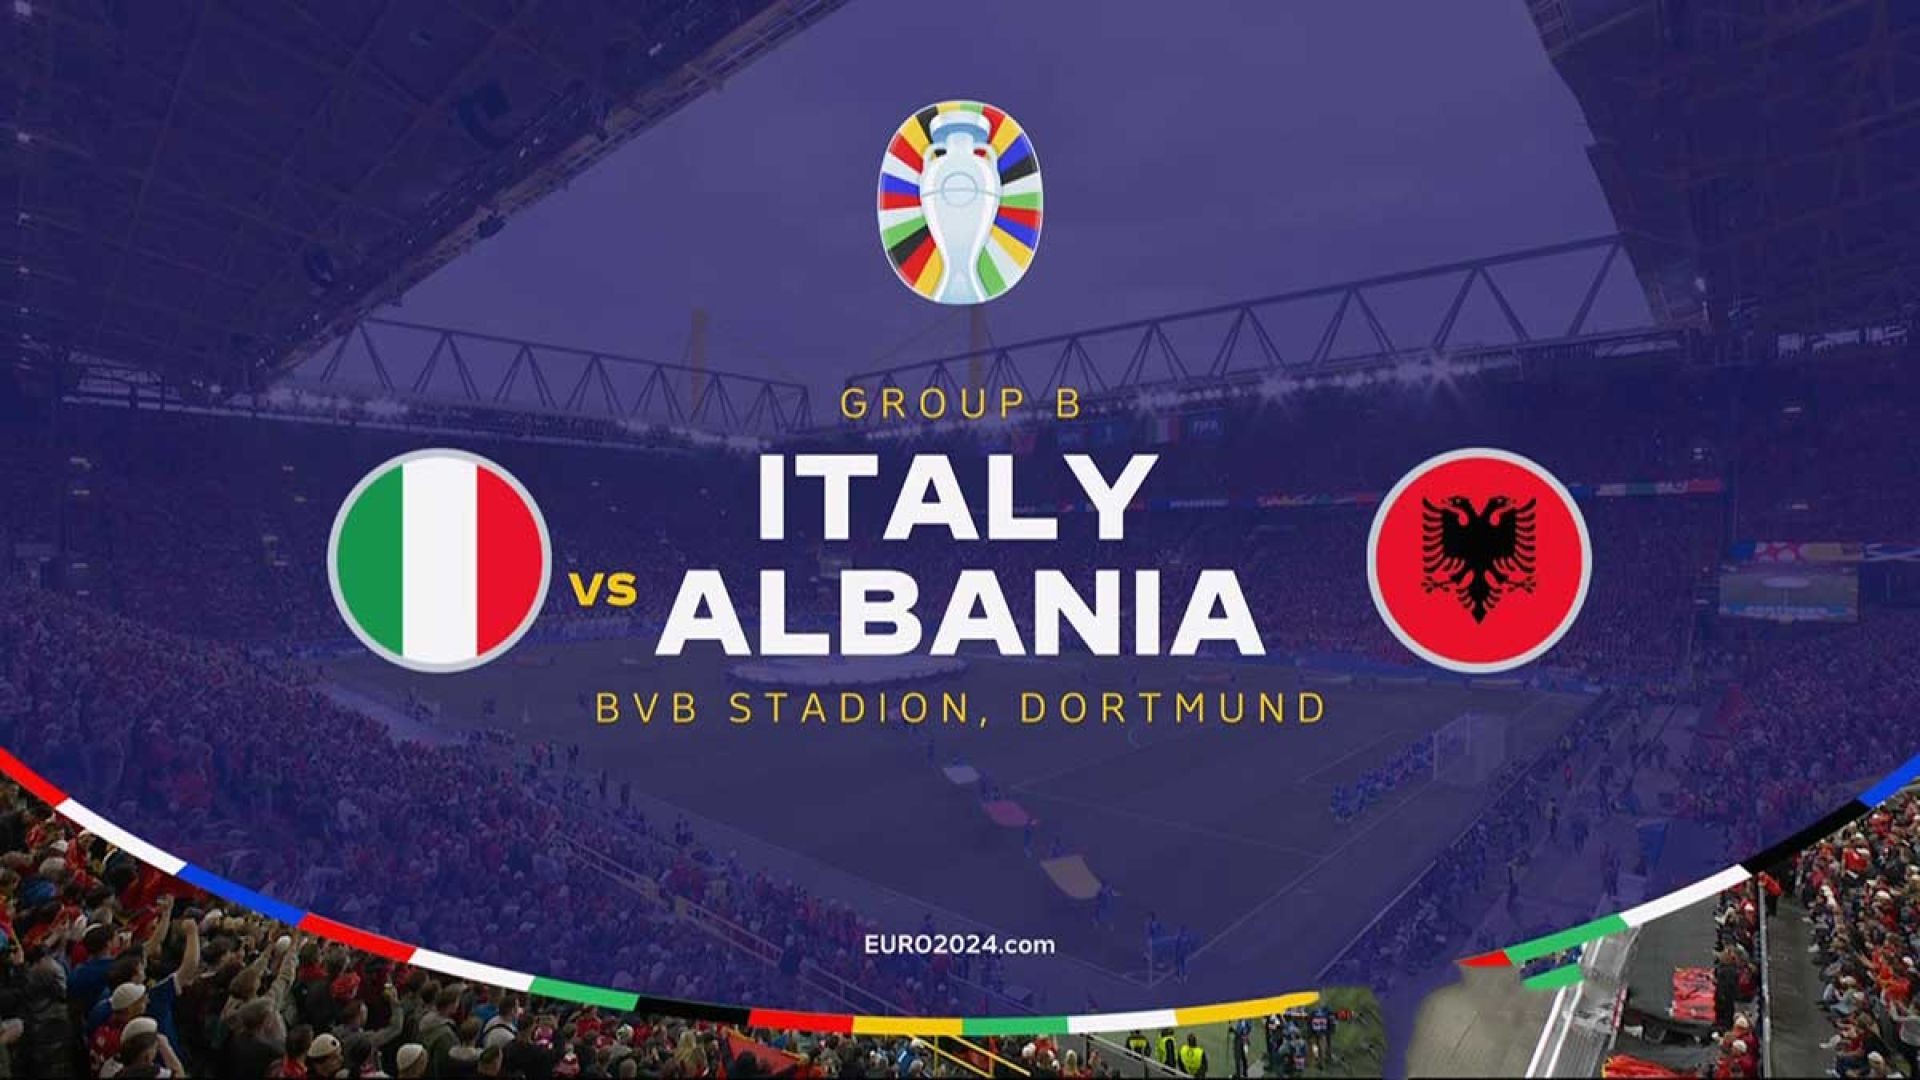 Italy vs Albania - (2nd Half)